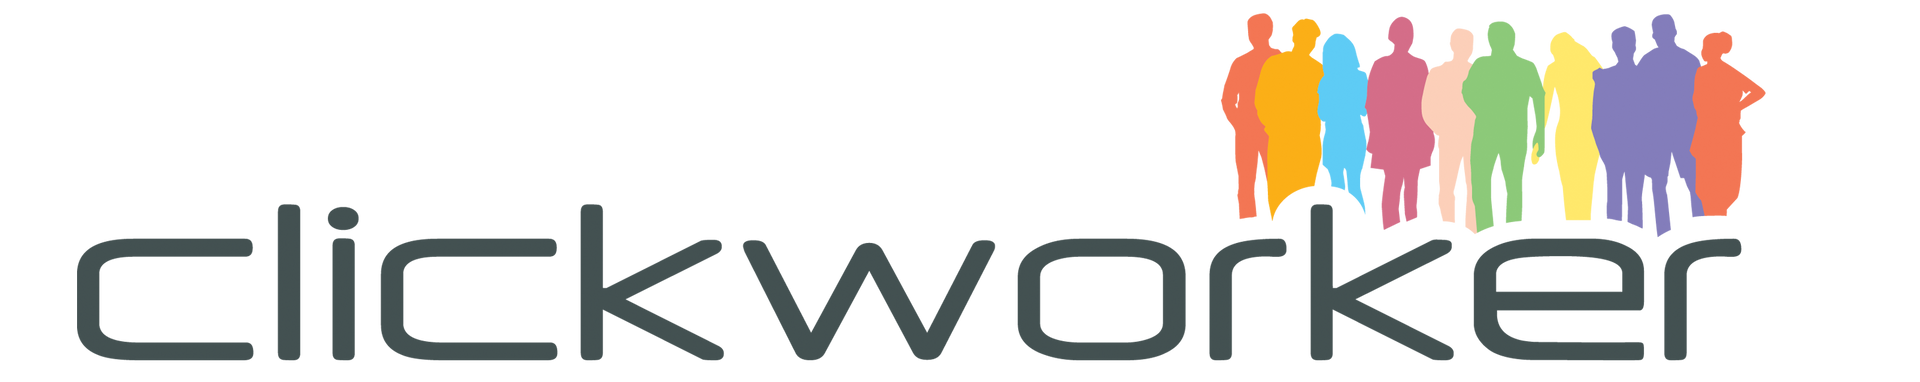 Image of clickworker logo